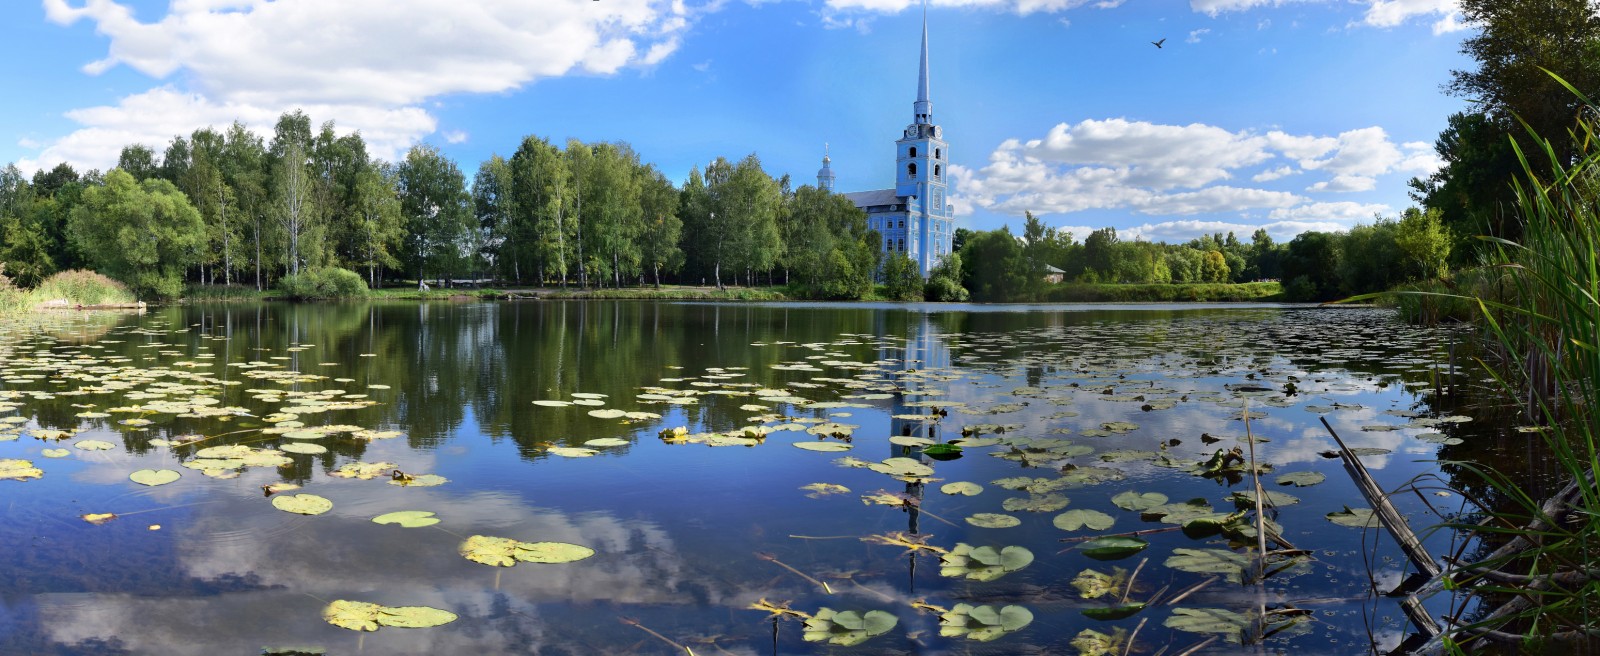 Петропавловский парк с прудами в Ярославле